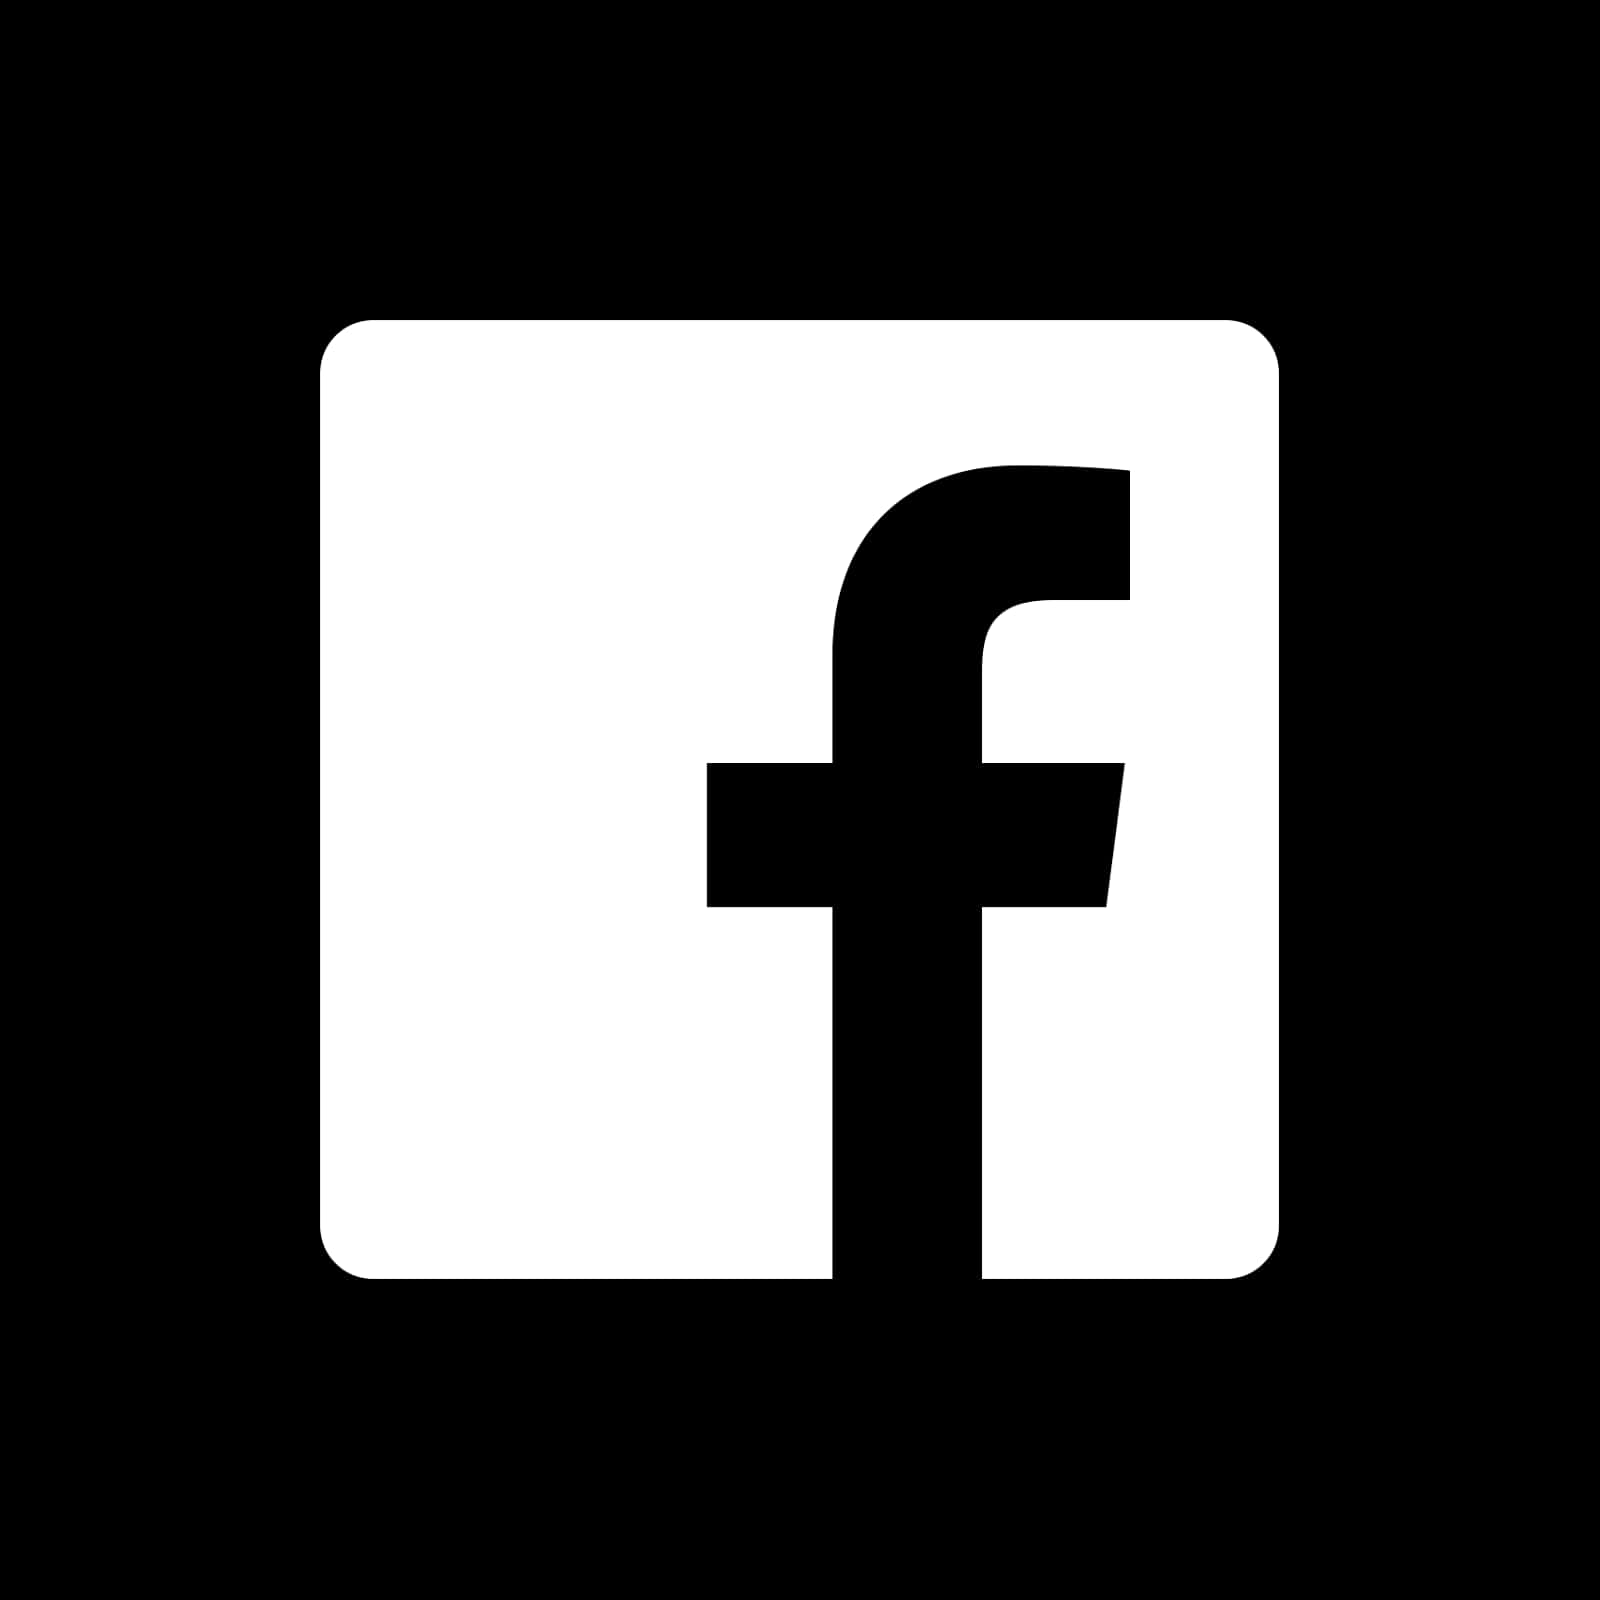 Facebook Logo Blackand White